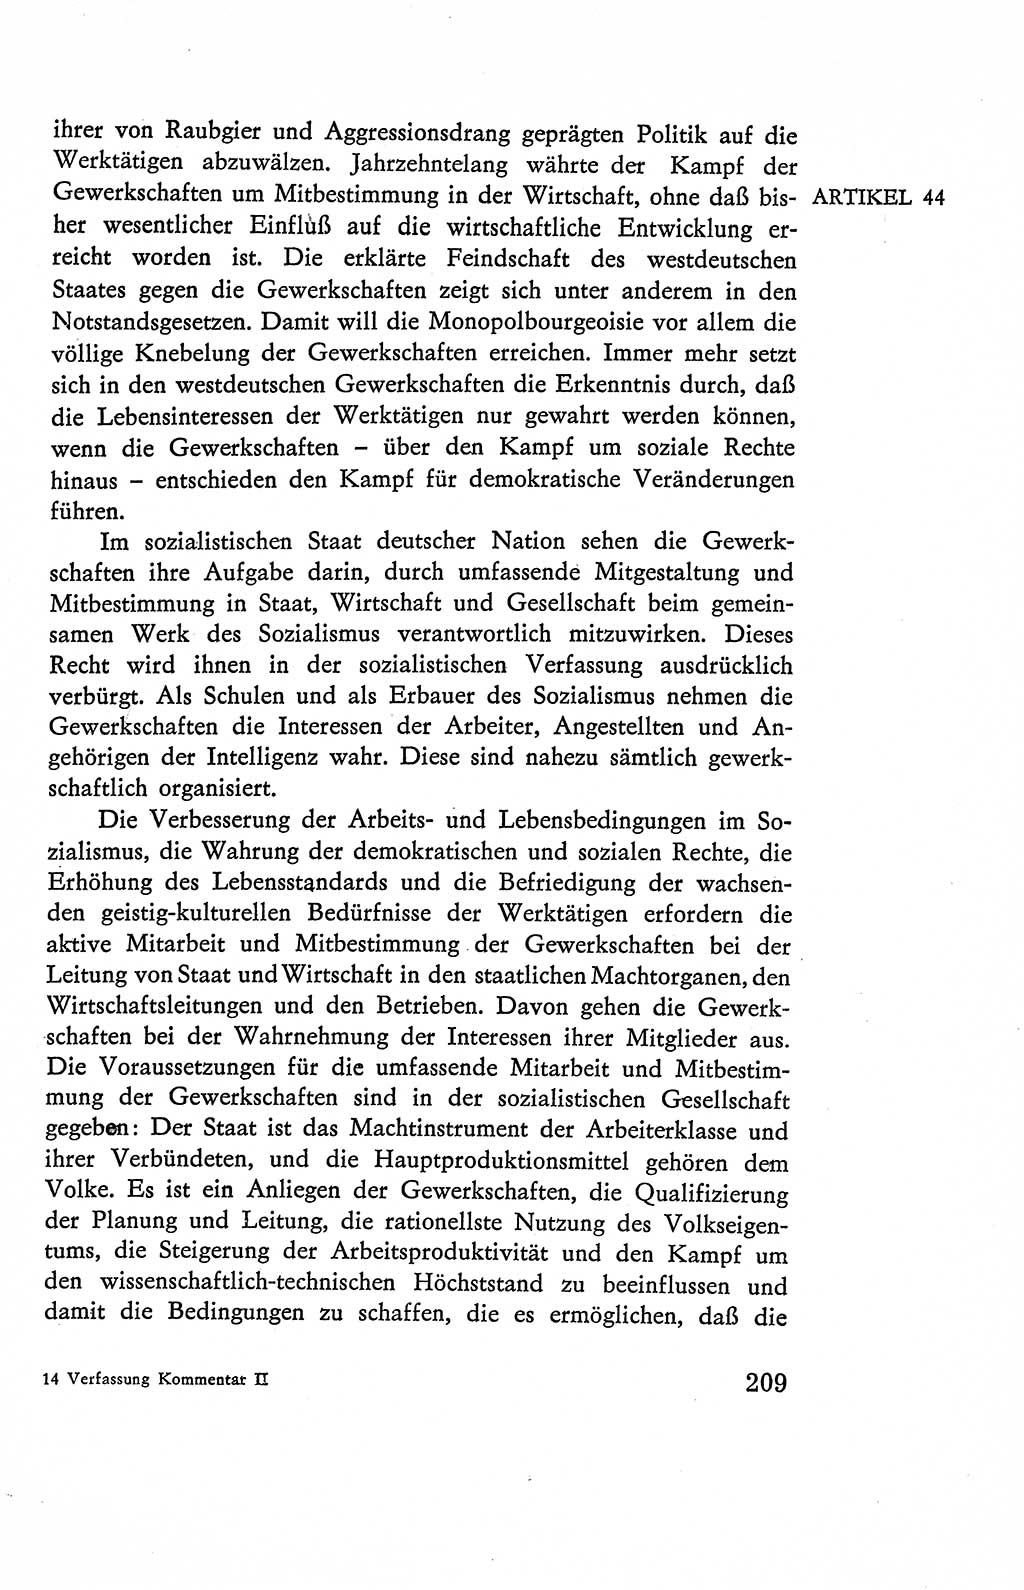 Verfassung der Deutschen Demokratischen Republik (DDR), Dokumente, Kommentar 1969, Band 2, Seite 209 (Verf. DDR Dok. Komm. 1969, Bd. 2, S. 209)